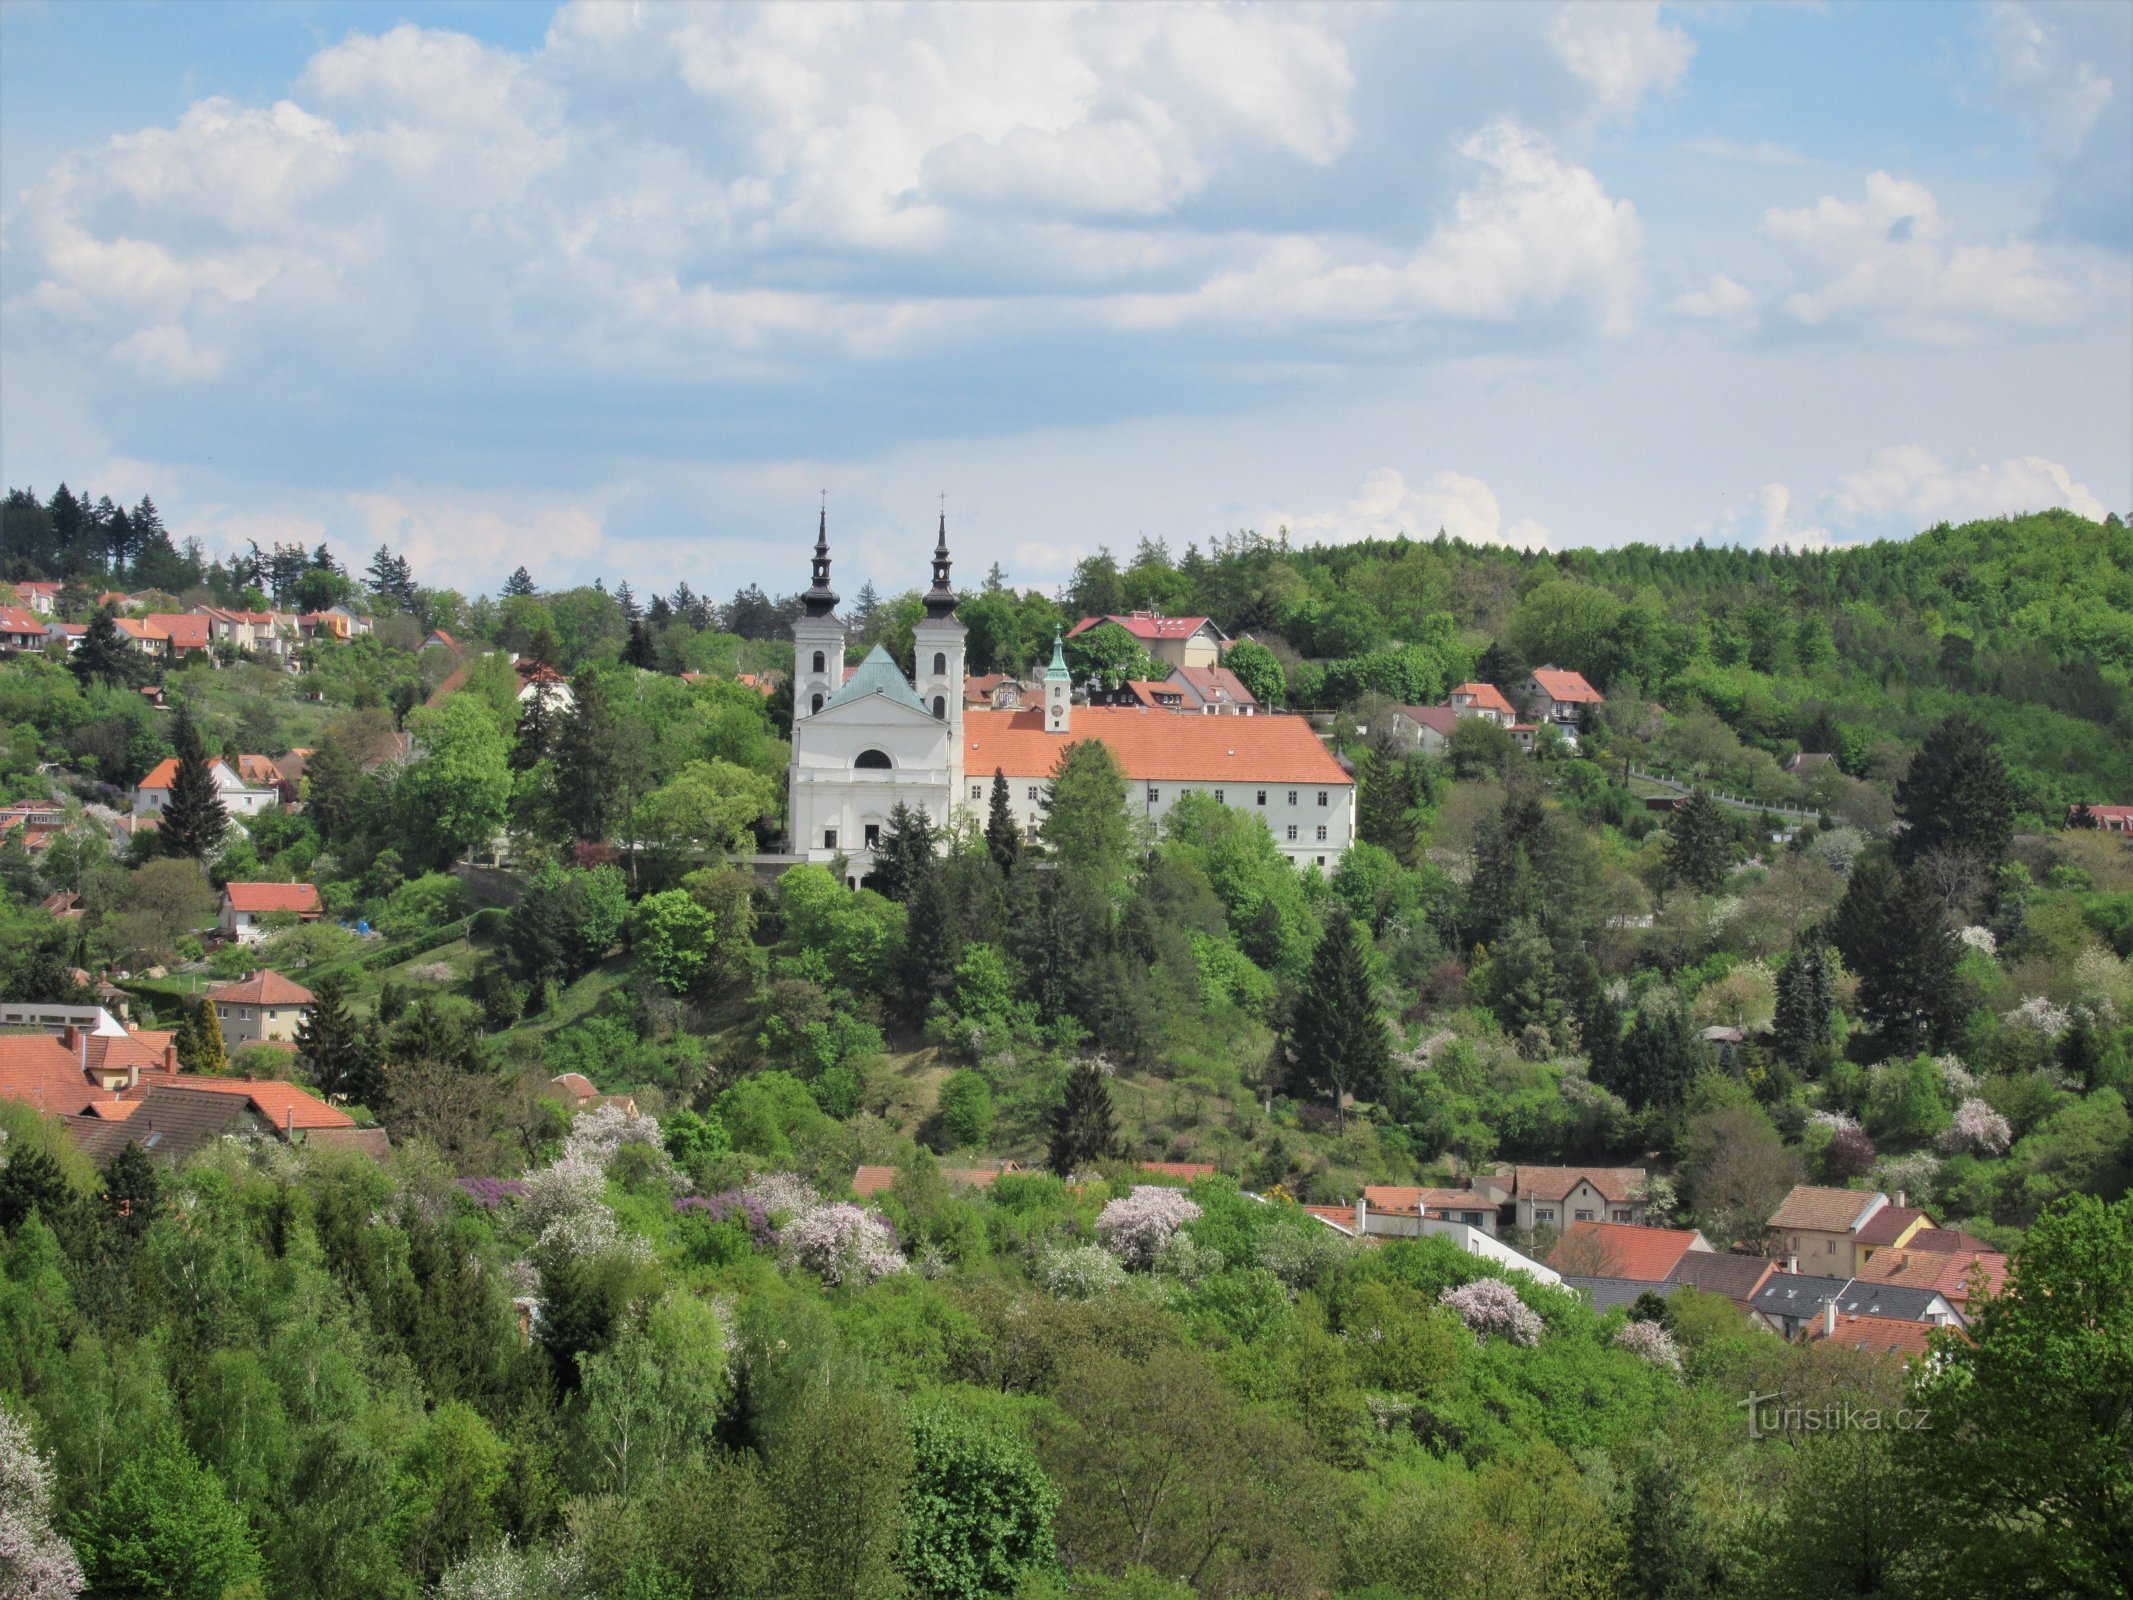 Vranov nära Brno - utsikt över byn